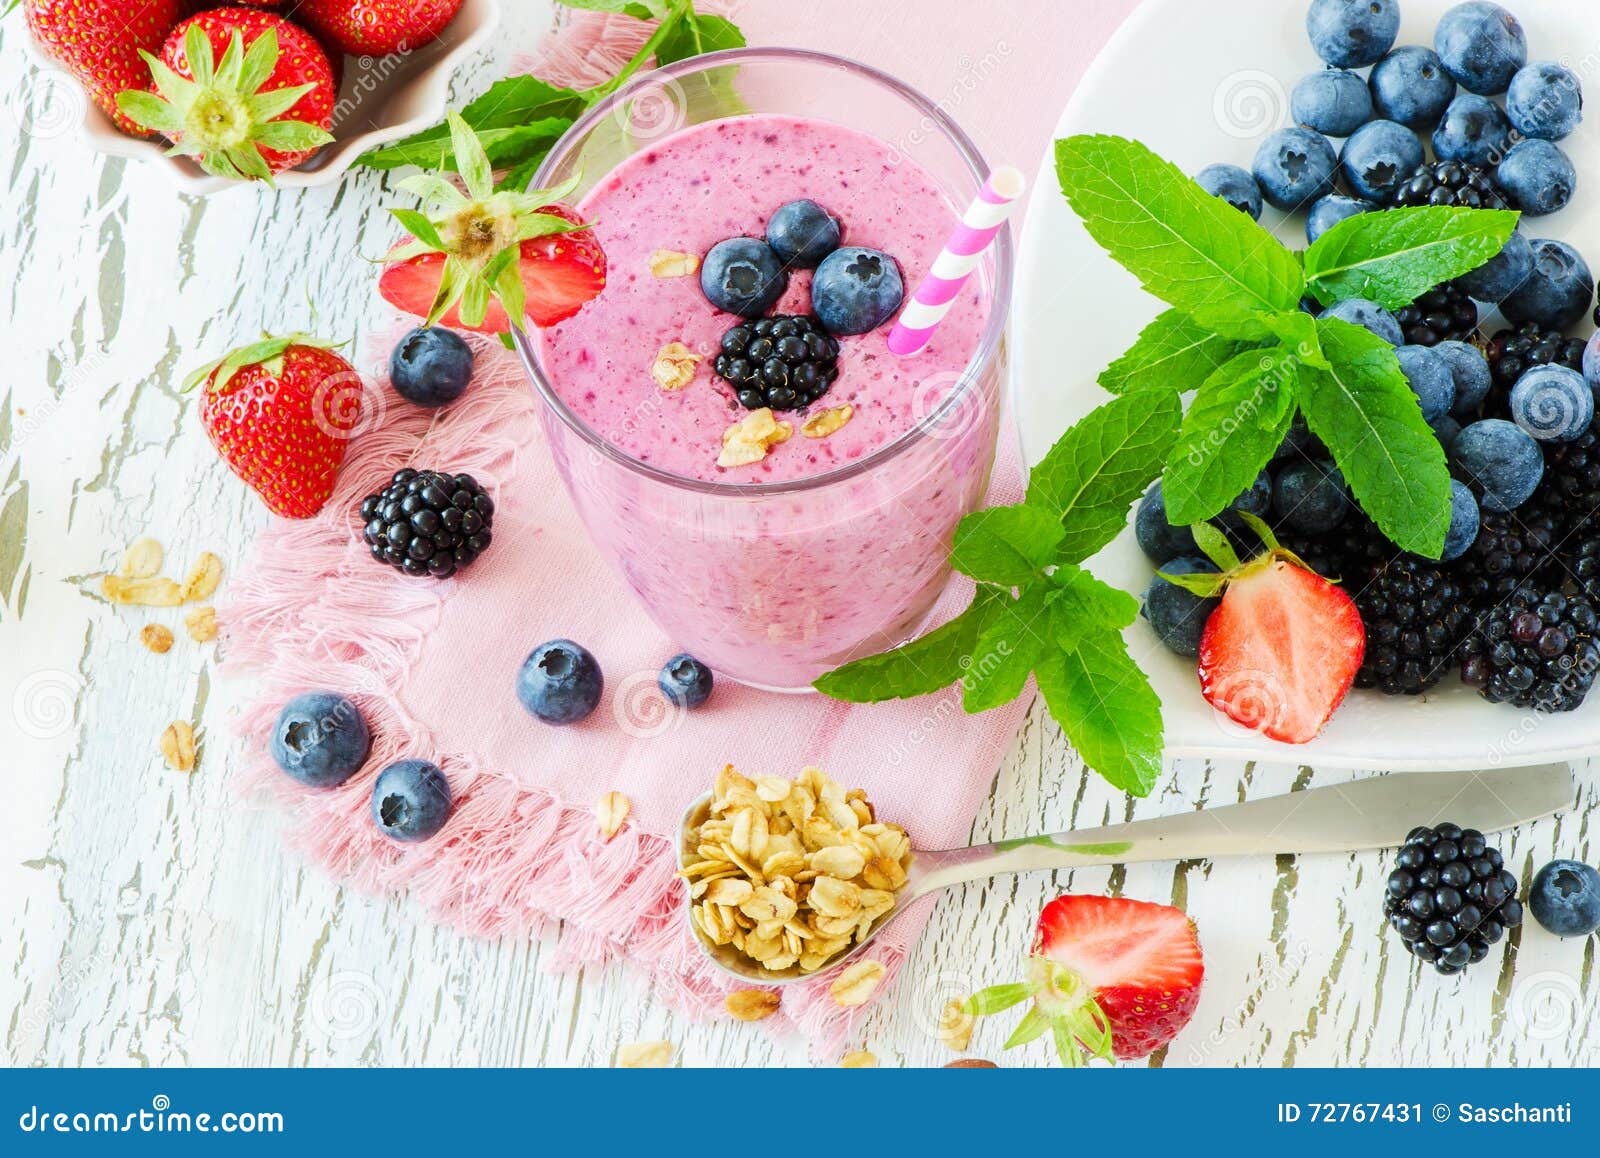 berry smoothie, healthy summer detox yogurt drink, diet or vegan